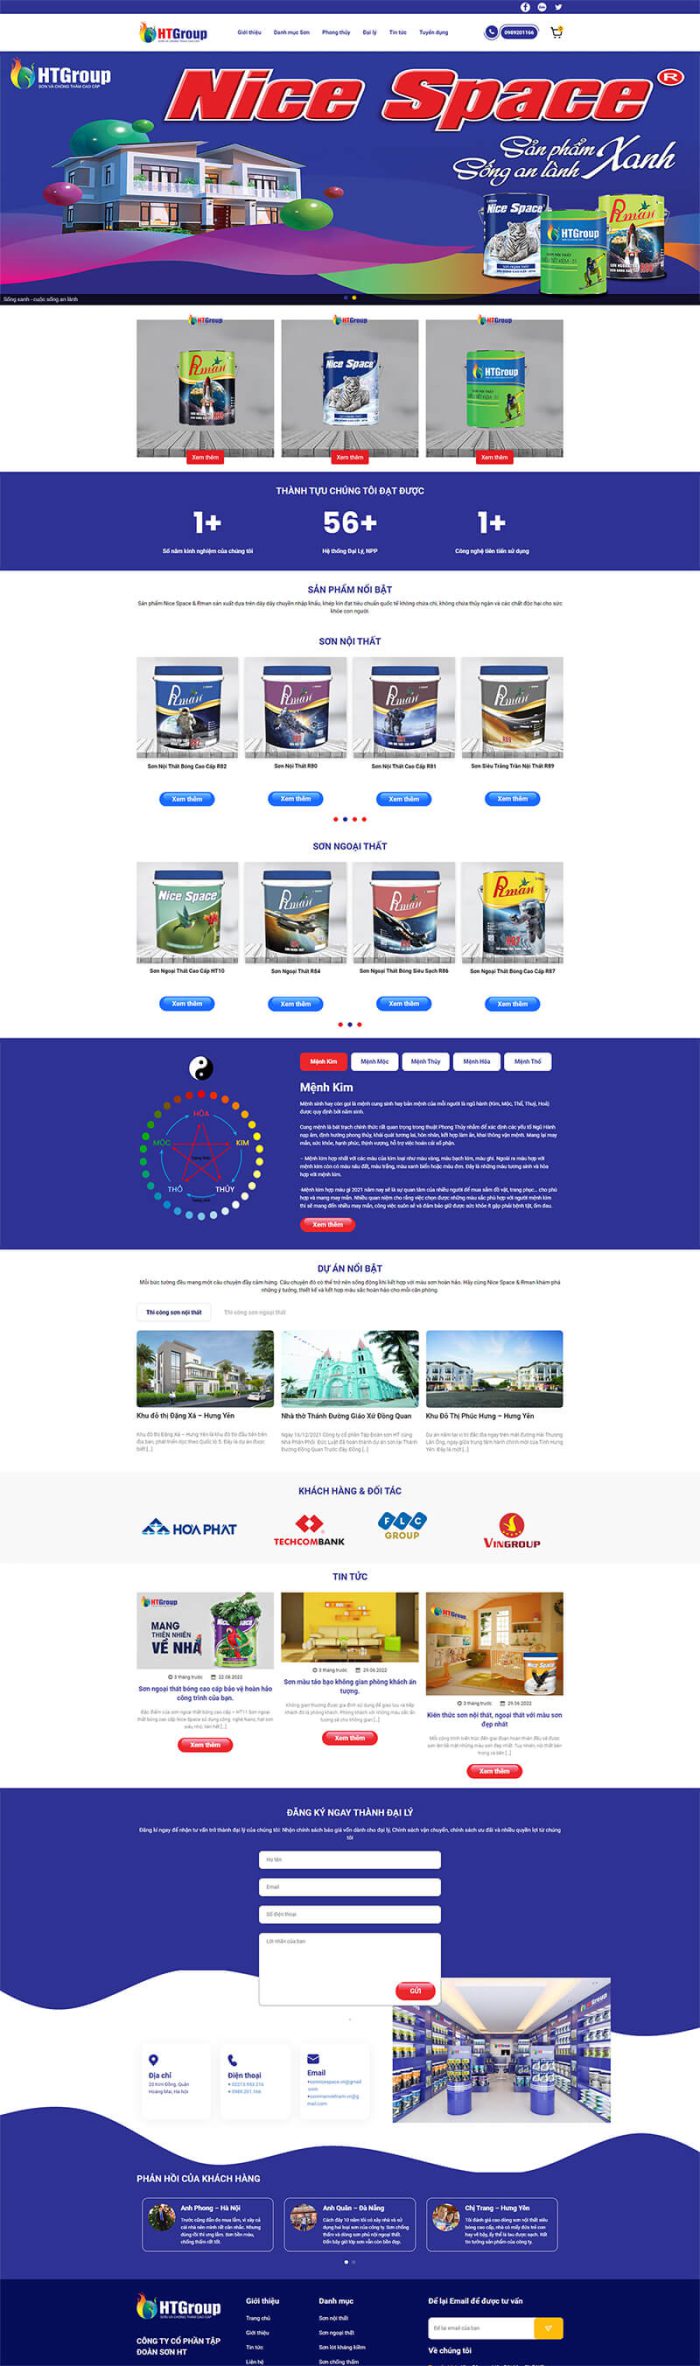 Thiết kế web công ty sơn Nicespace Vietnam